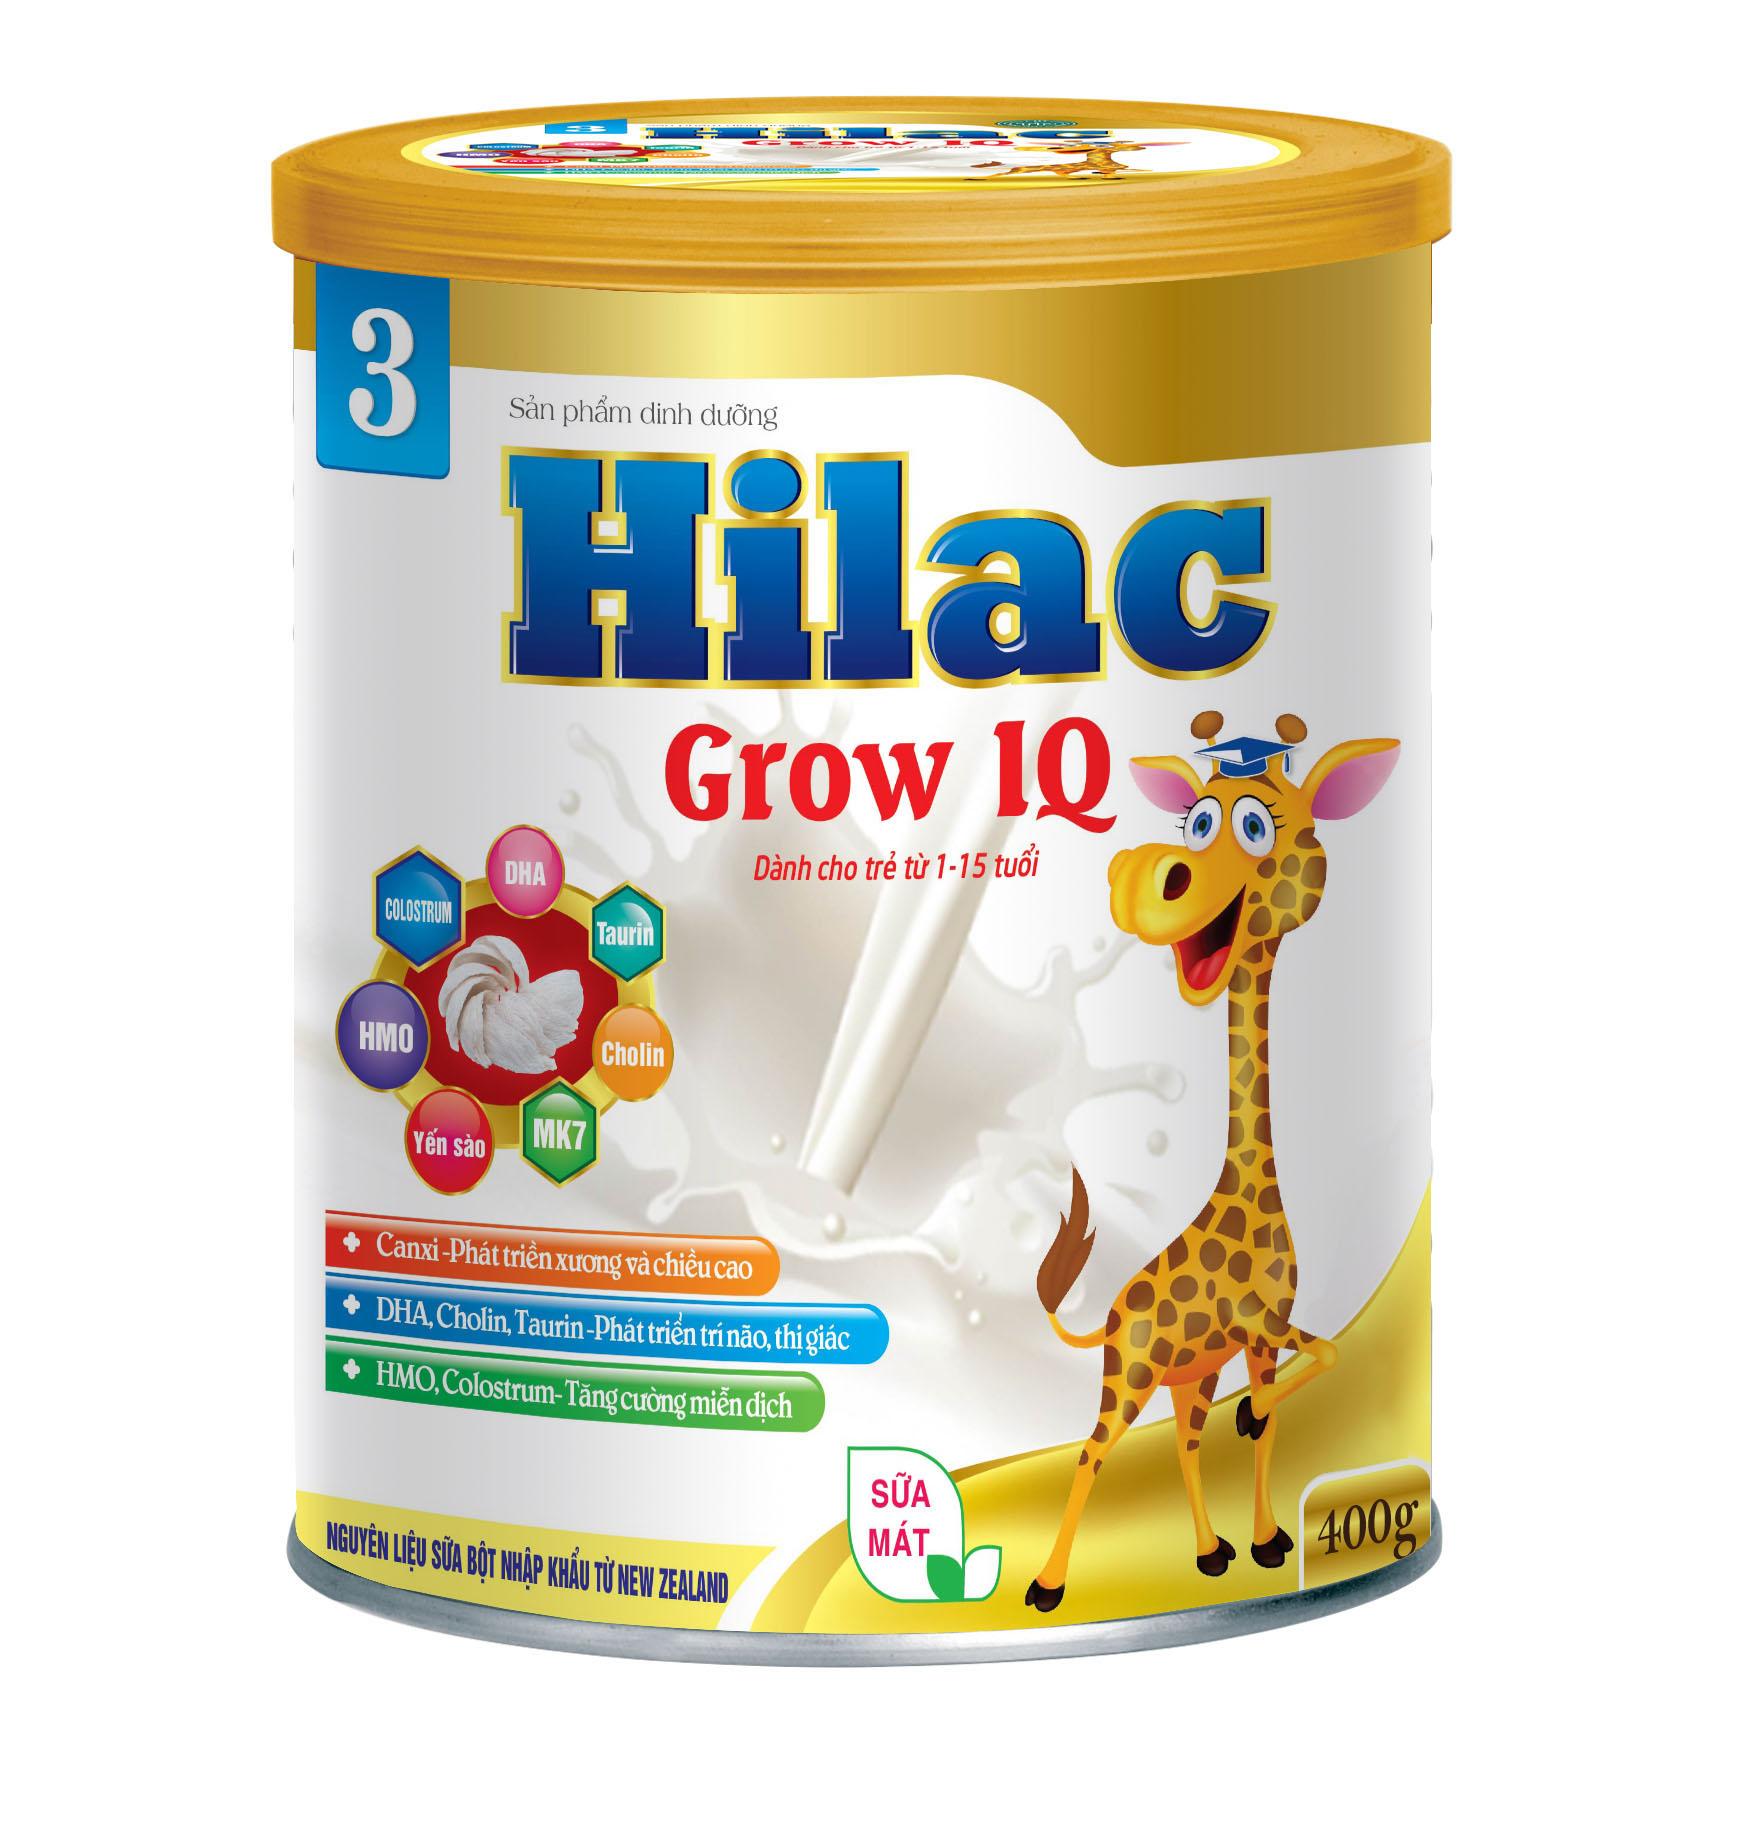 Hilac Grow IQ bé 1-15 tuổi - Sữa Bột Hilac - Công Ty TNHH Thương Mại & Dược Phẩm Quốc Tế Thành Phát